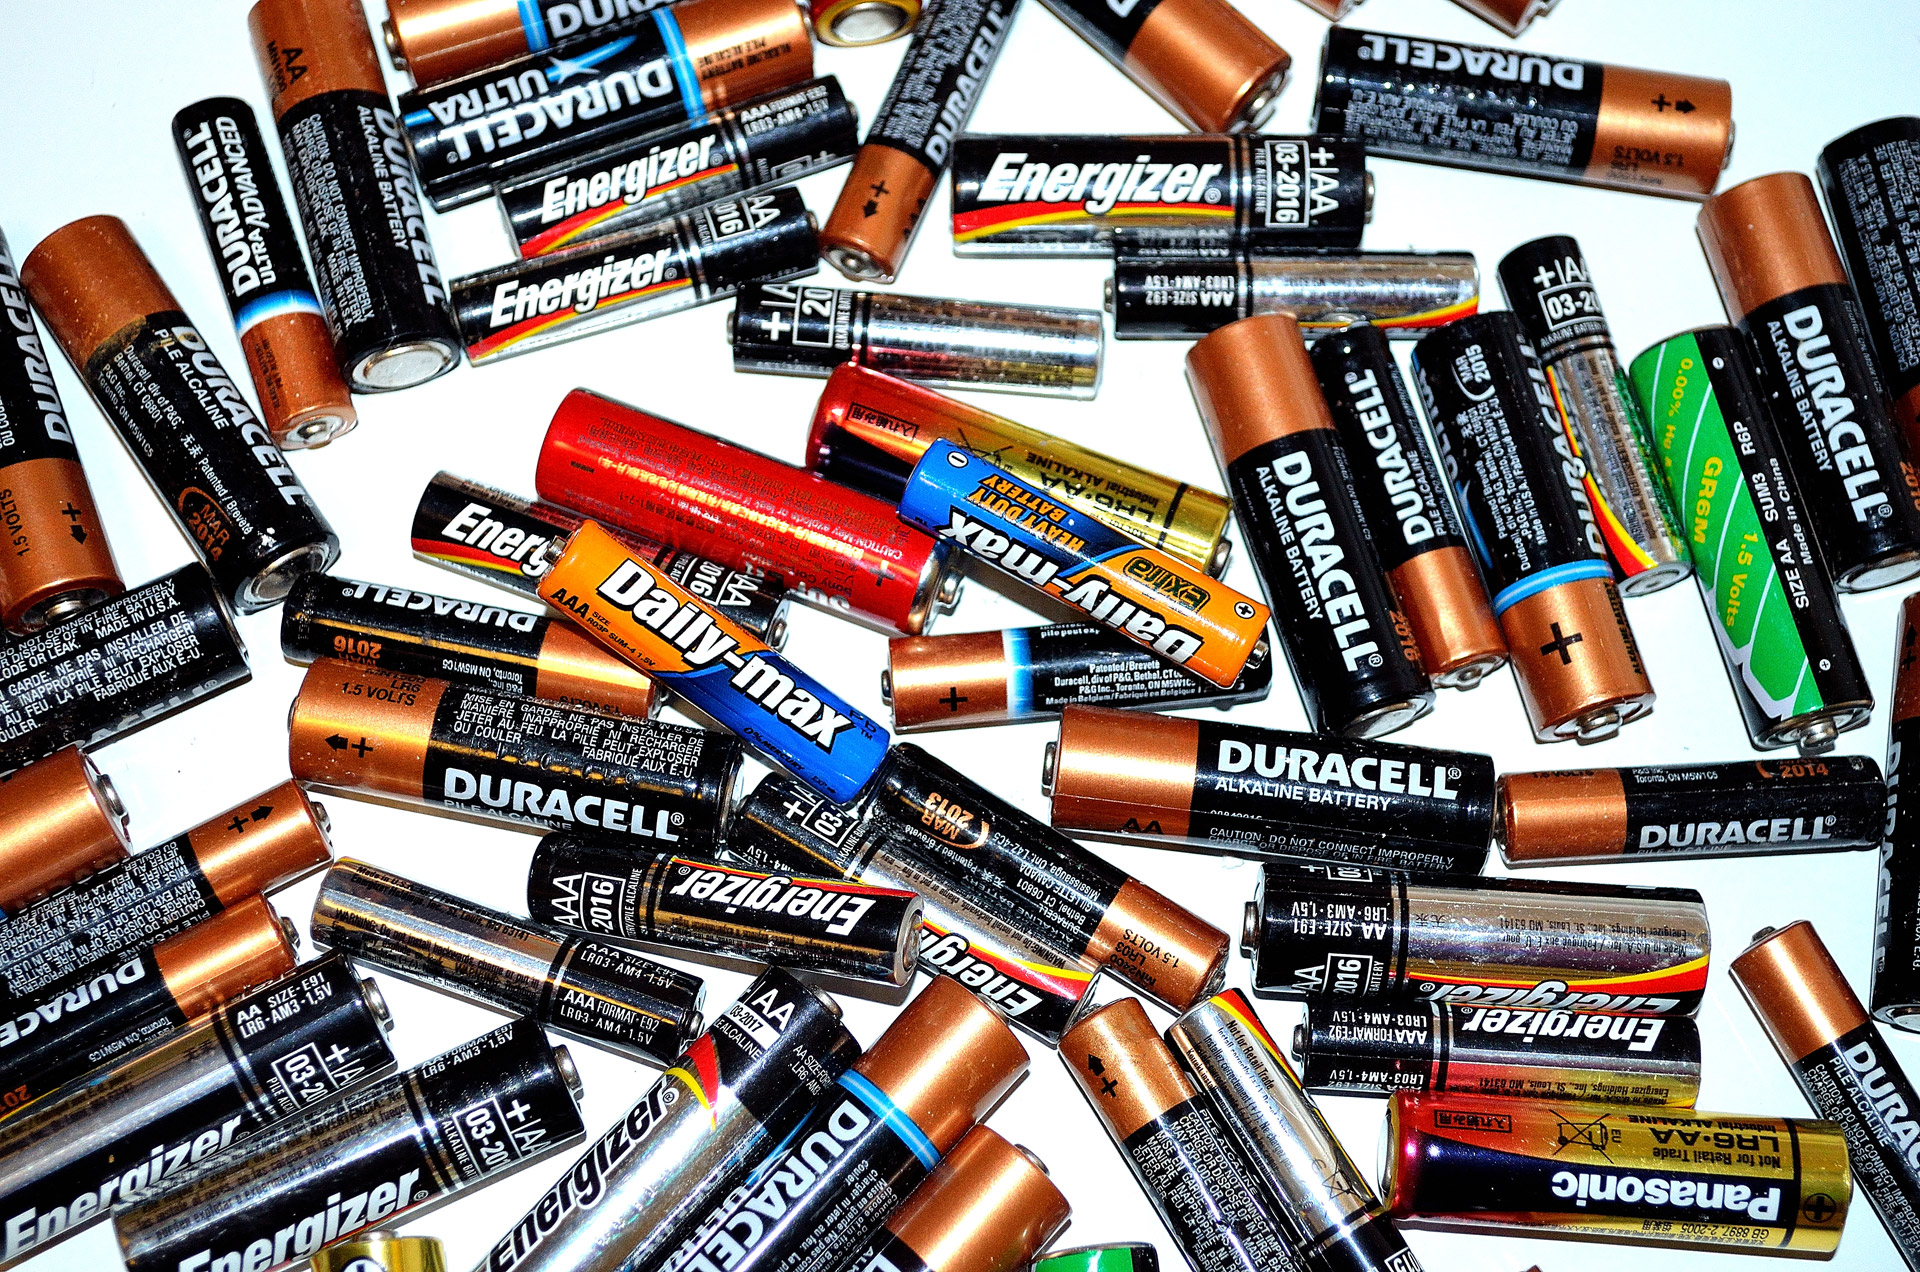 Forschung - Energiespeicher verbindet Batterie mit Elektrolyseur